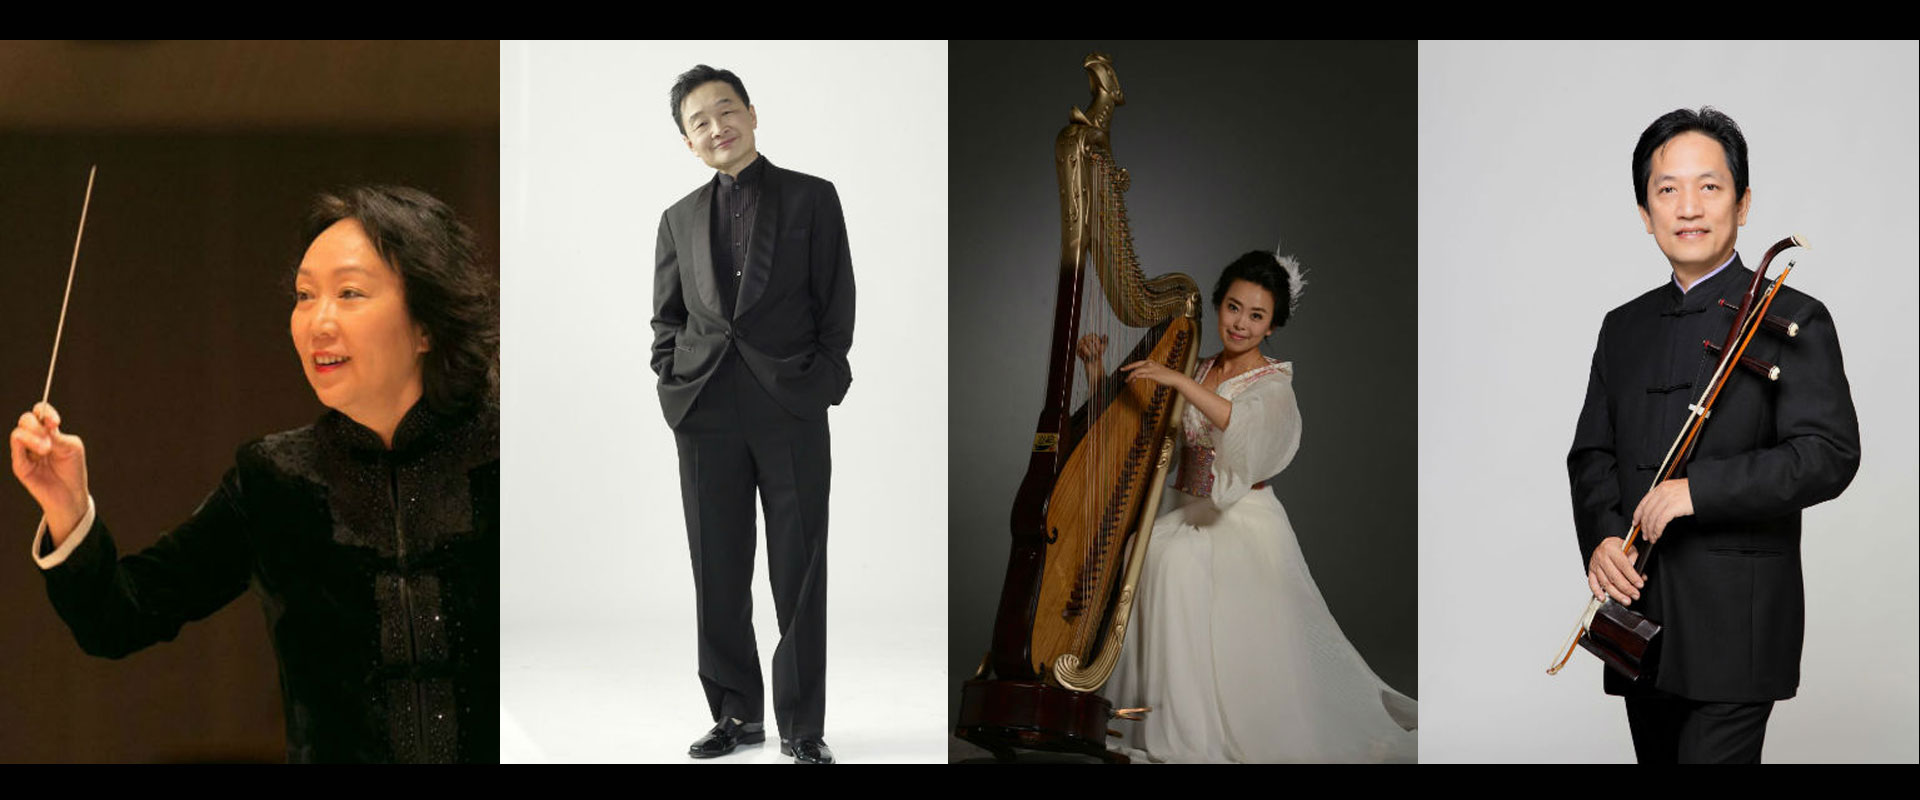 Flavours-of-Chinese-Music-1 Flavours of Chinese Music – A Night of Liu Xi Jin’s Works